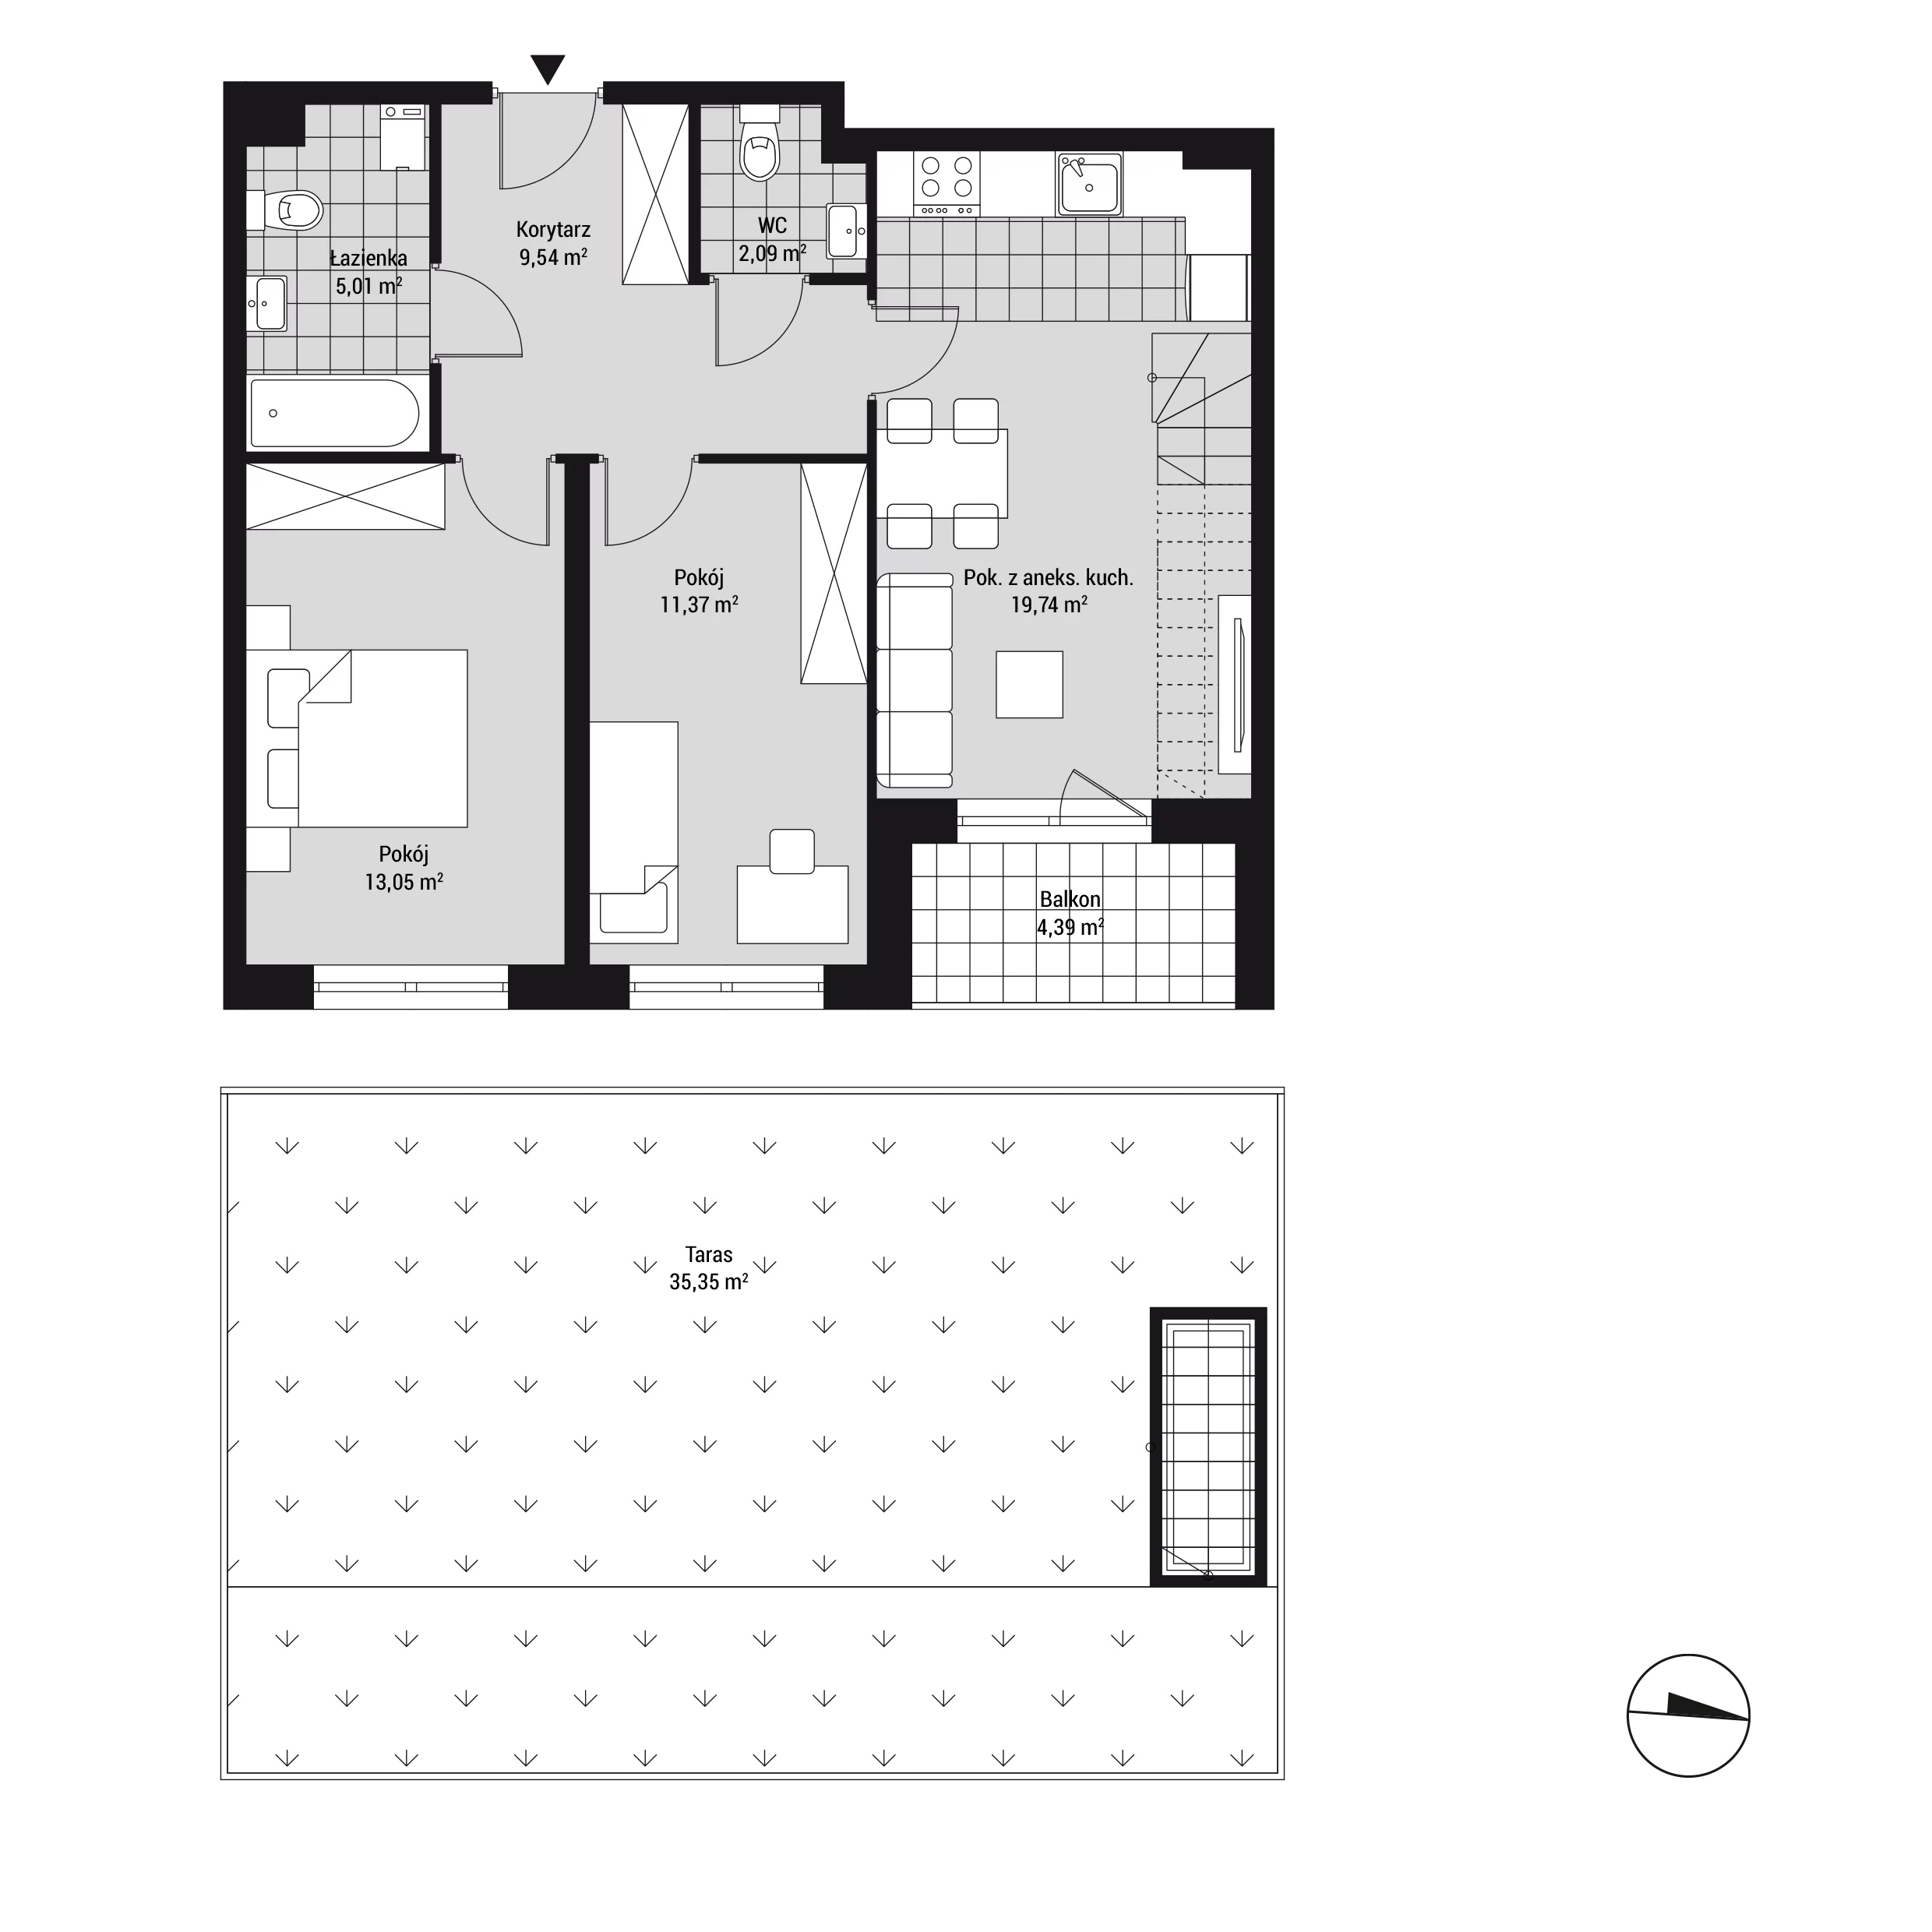 Mieszkanie 60,89 m², piętro 2, oferta nr mieszkanie 25, Na Błonie 106, Kraków, Bronowice, Wola Justowska, ul. Na Błonie 106